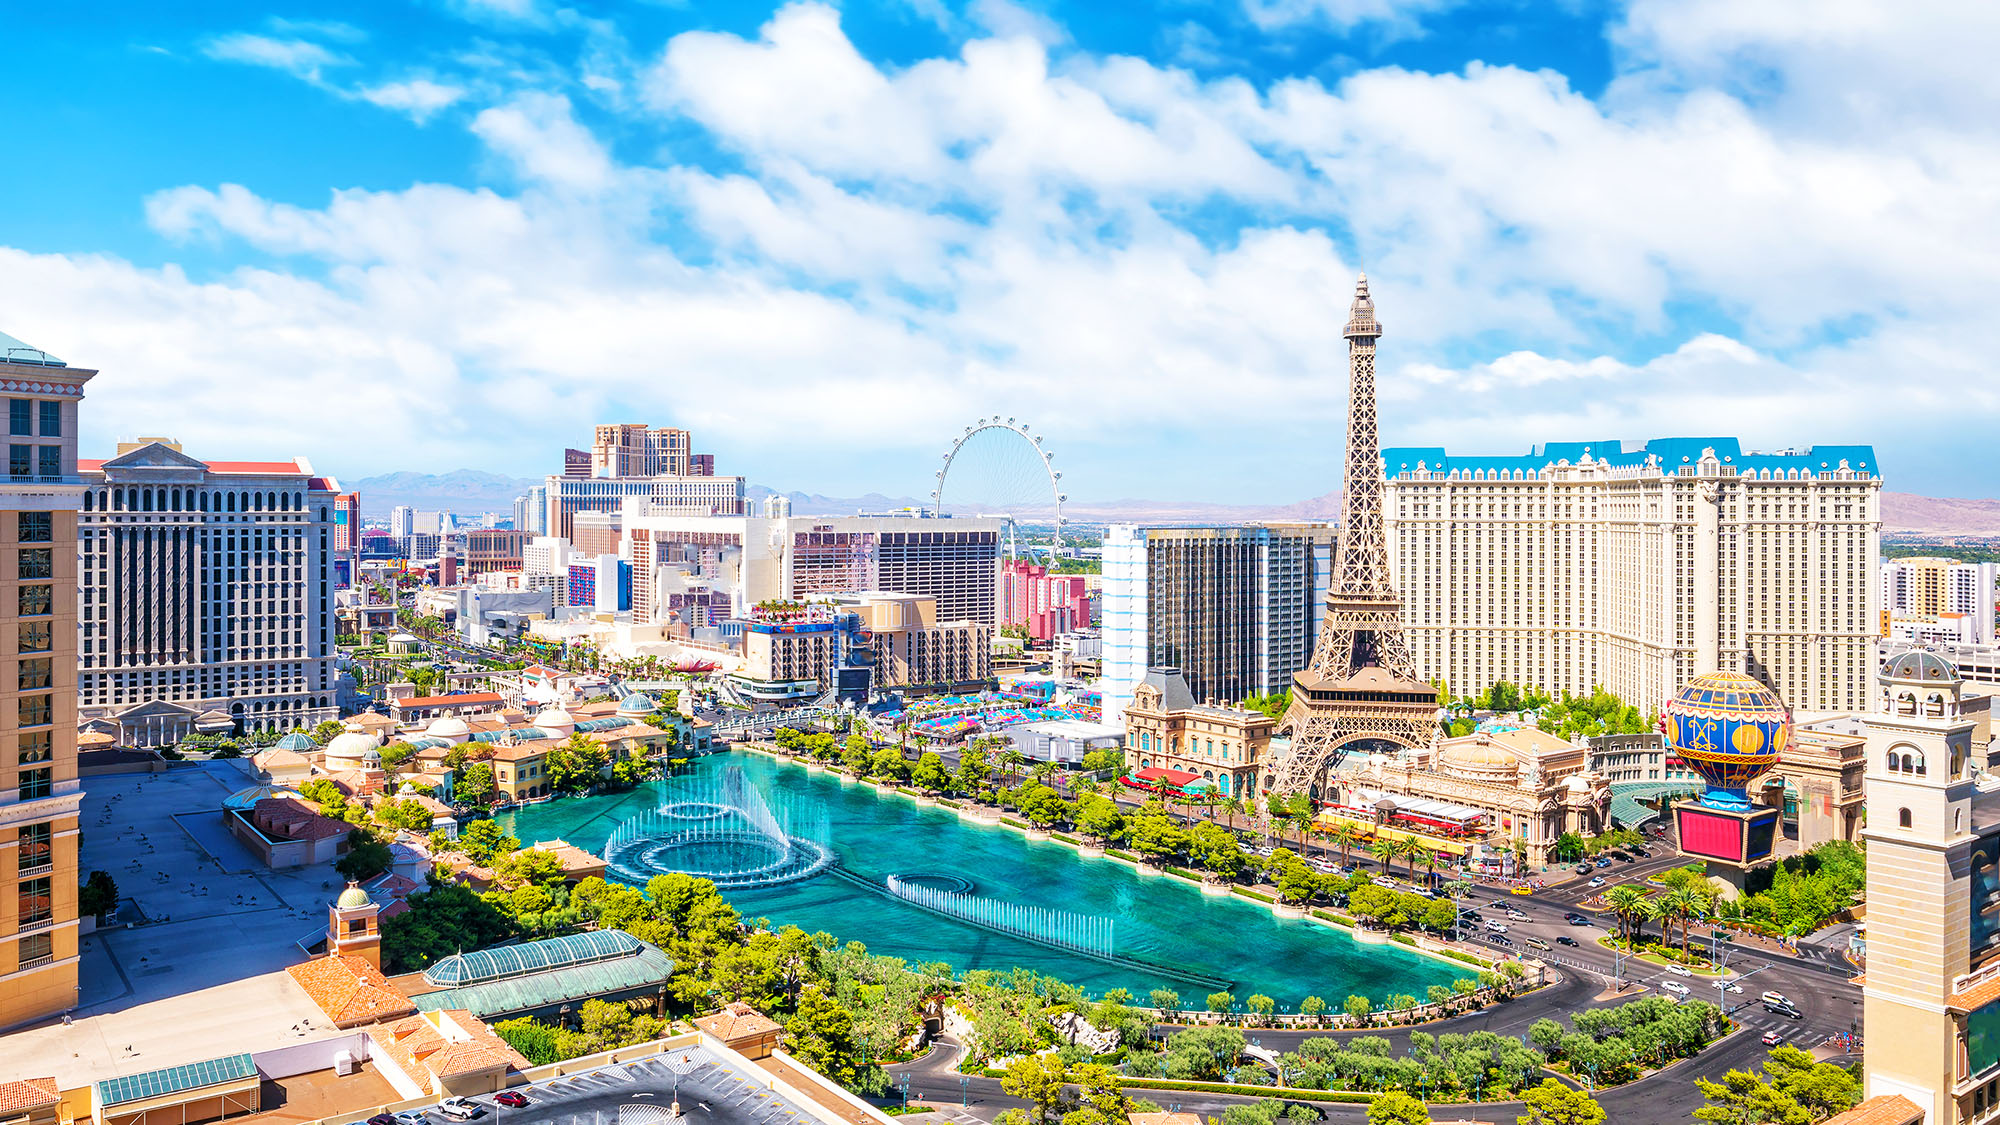 Aerial shot of elegant hotels in Vegas